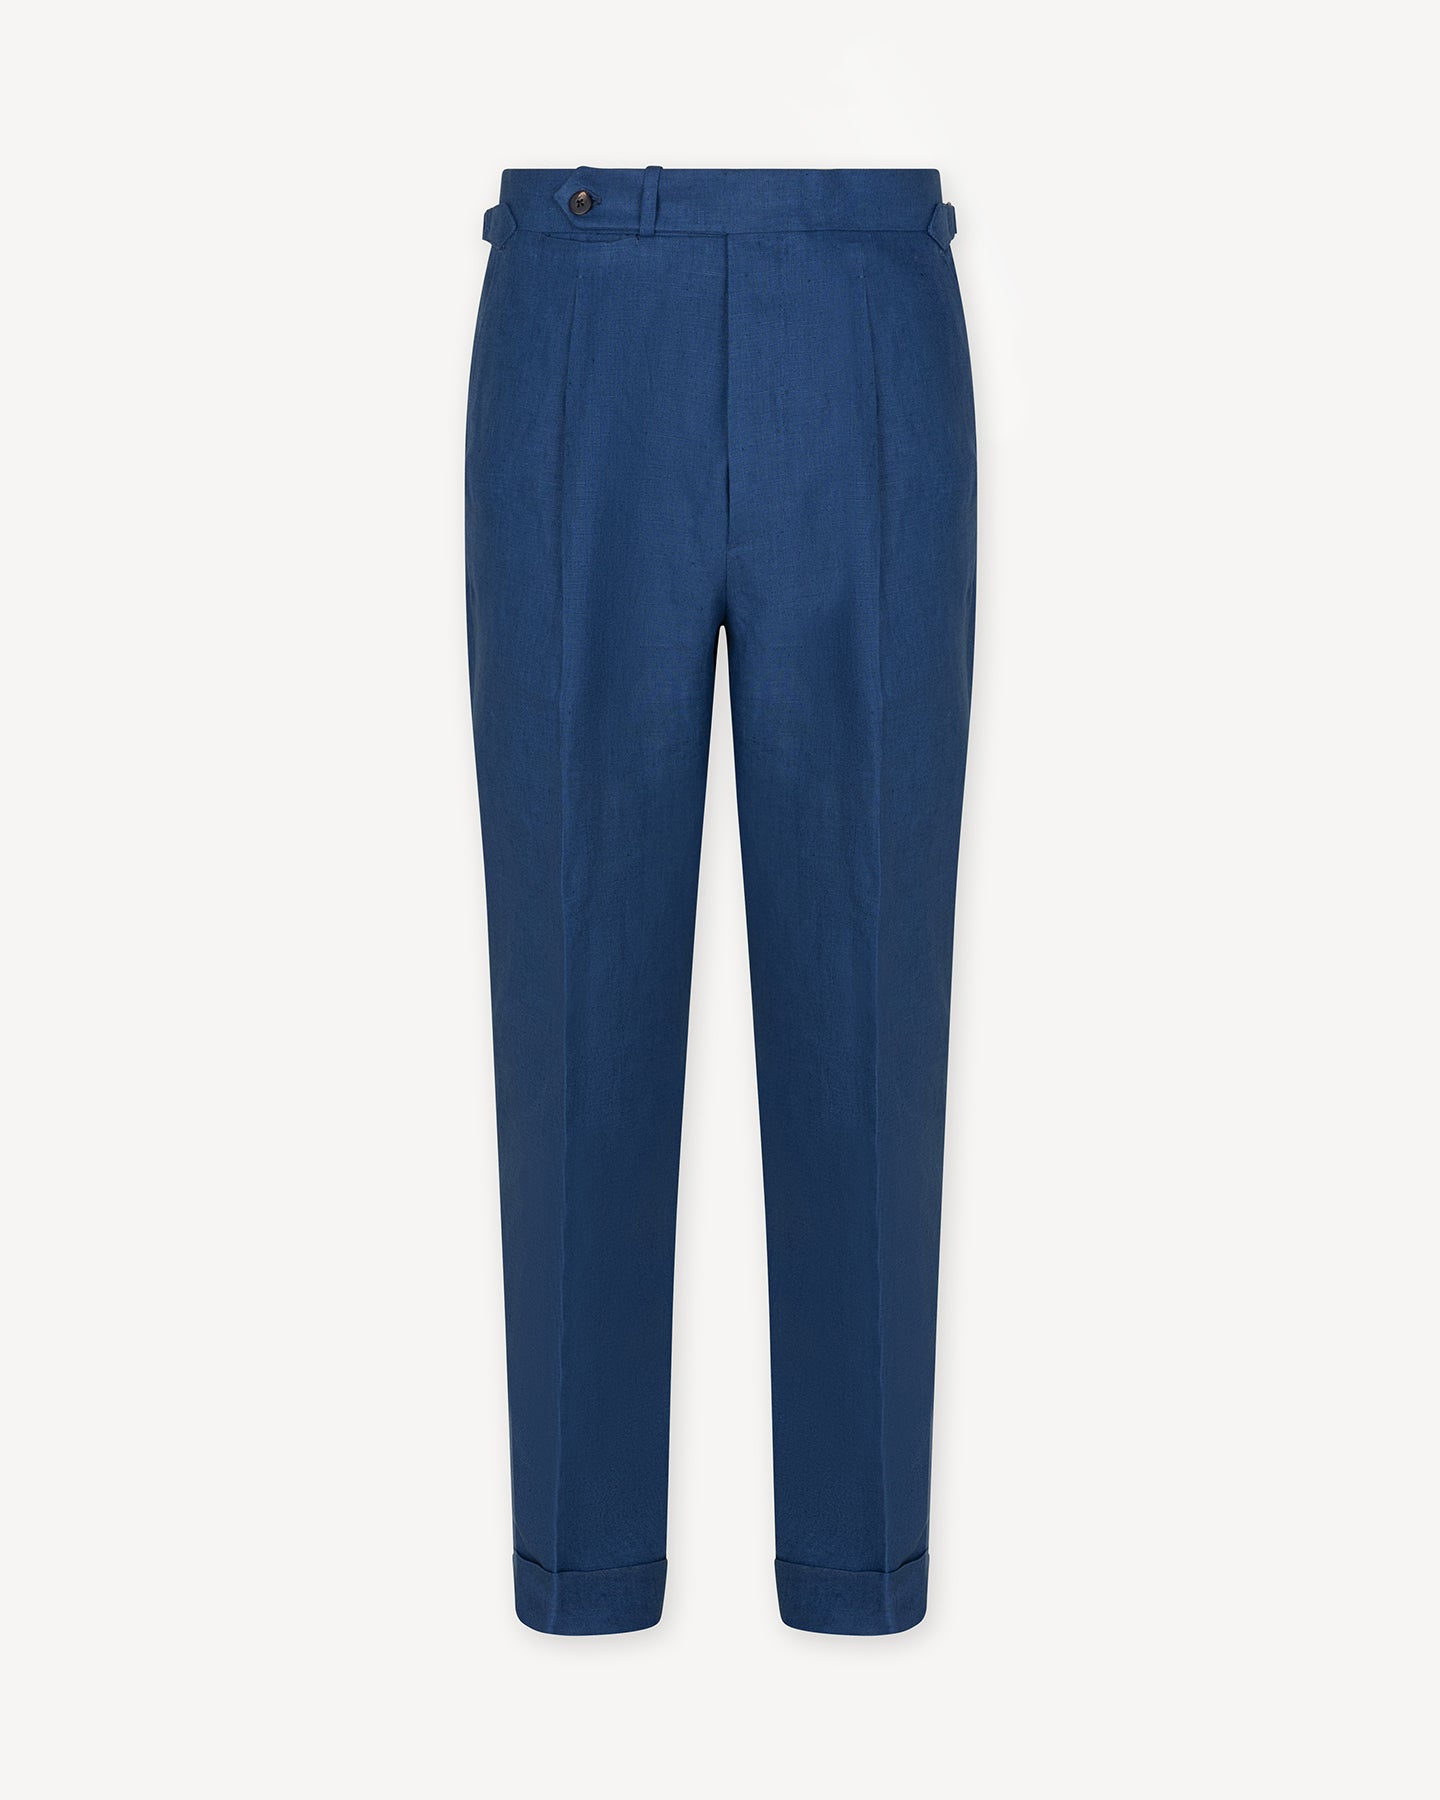 Blueberry Single Pleat Linen Trousers